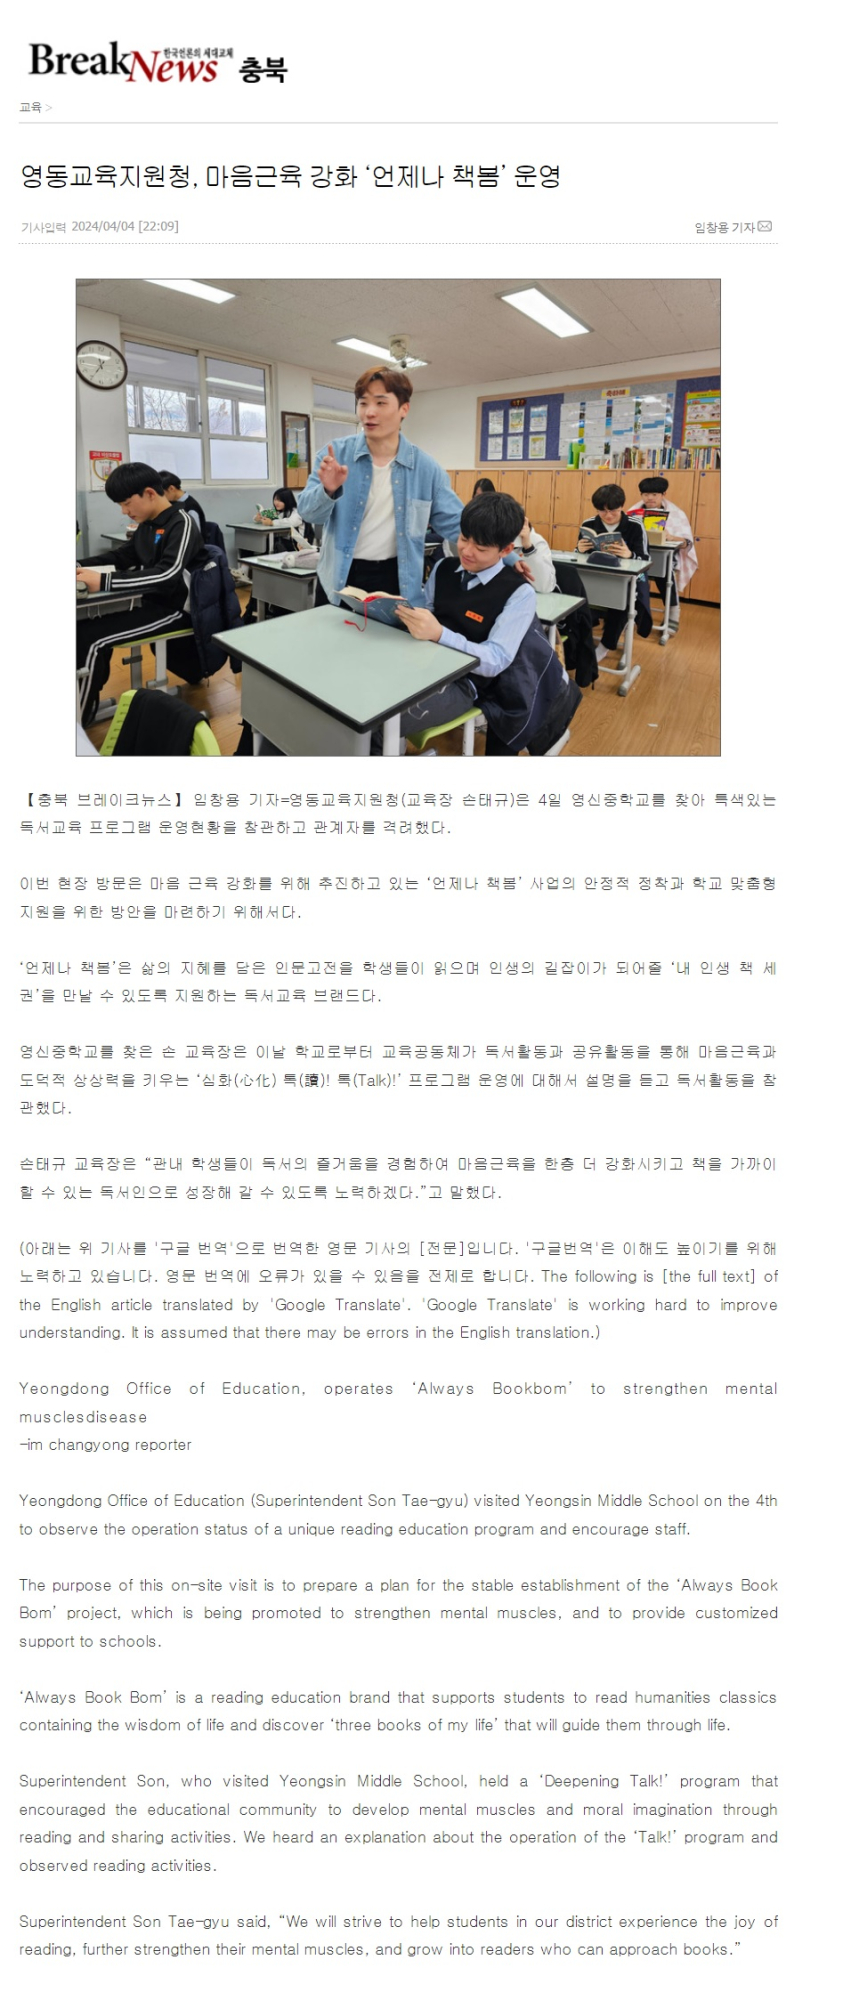 마음근육 강화 '언제나 책봄'운영 기사1_브레이크뉴스